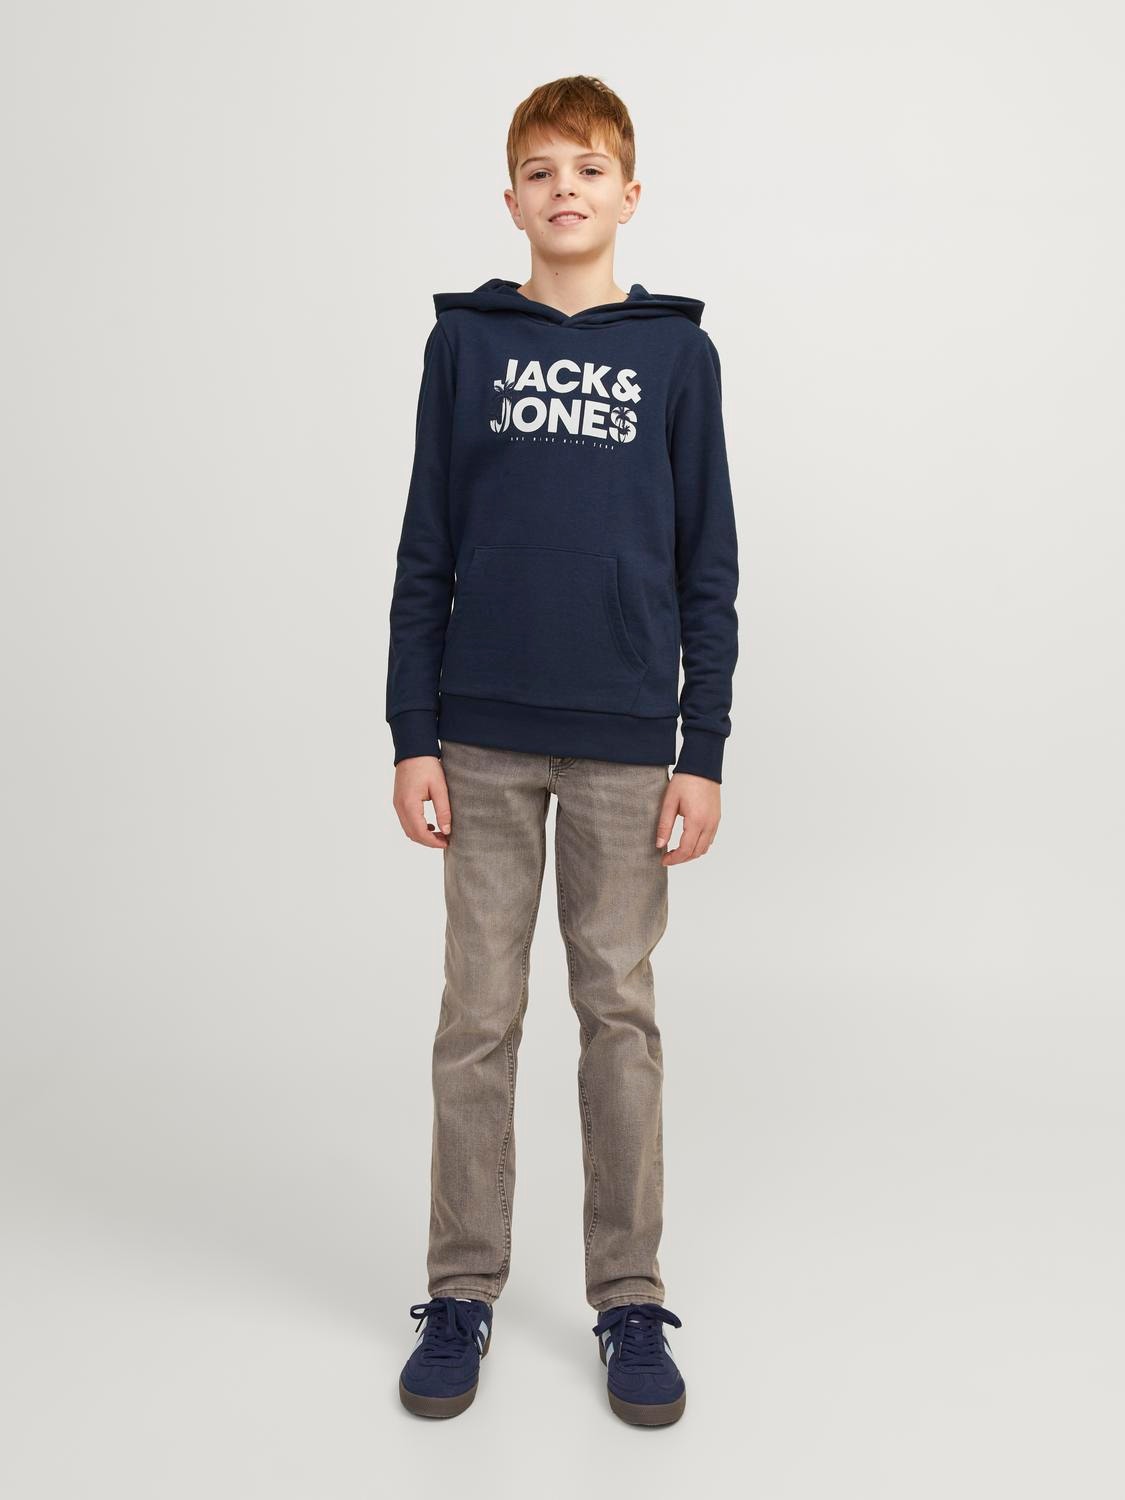 Jack & Jones Printed Hoodie For boys -Navy Blazer - 12249676